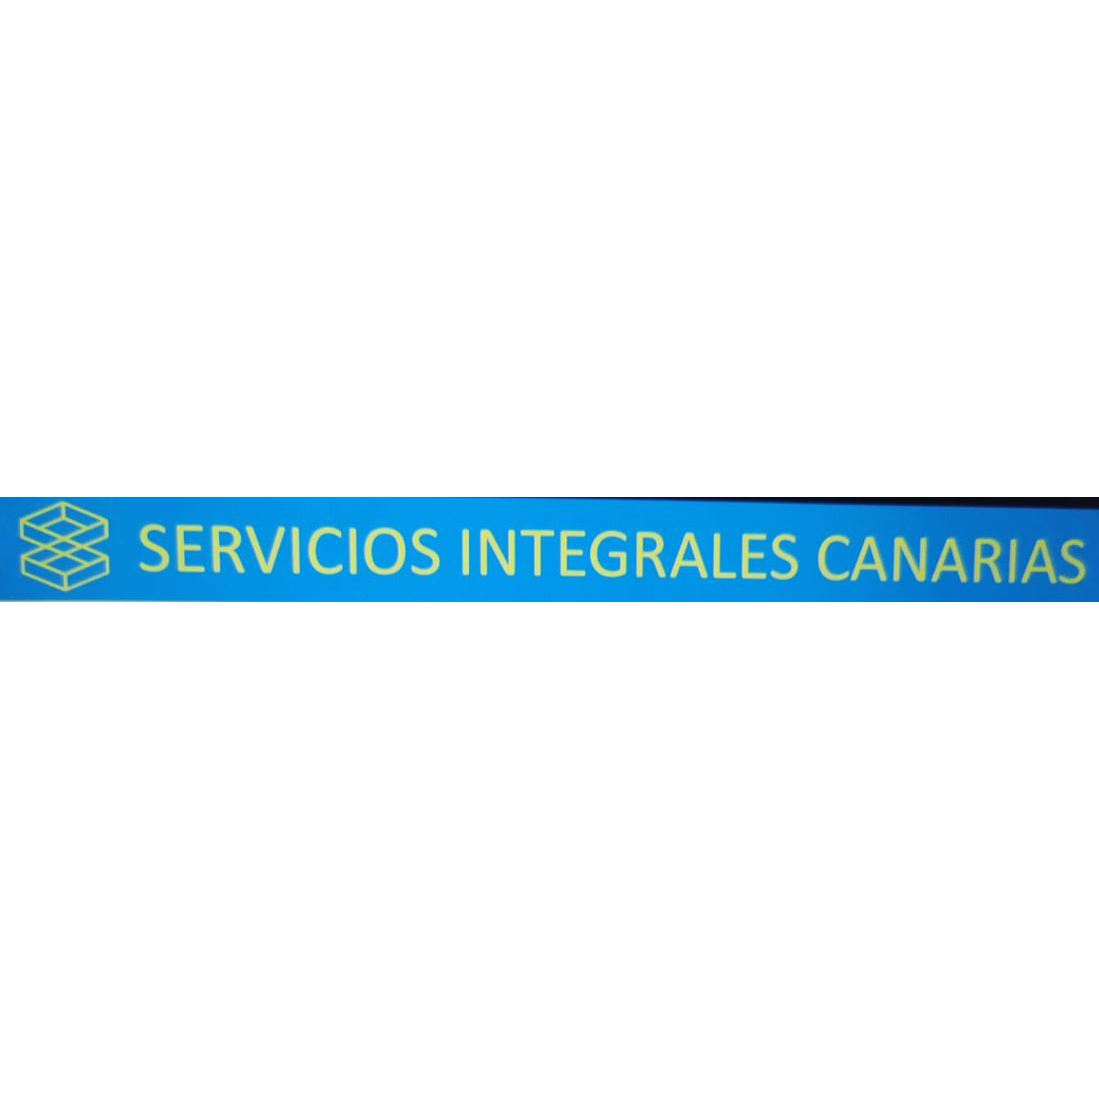 SERVICIOS INTEGRALES CANARIAS I Reformas I Control de Plagas I Limpieza I Pintura I Electricidad Santa Brígida